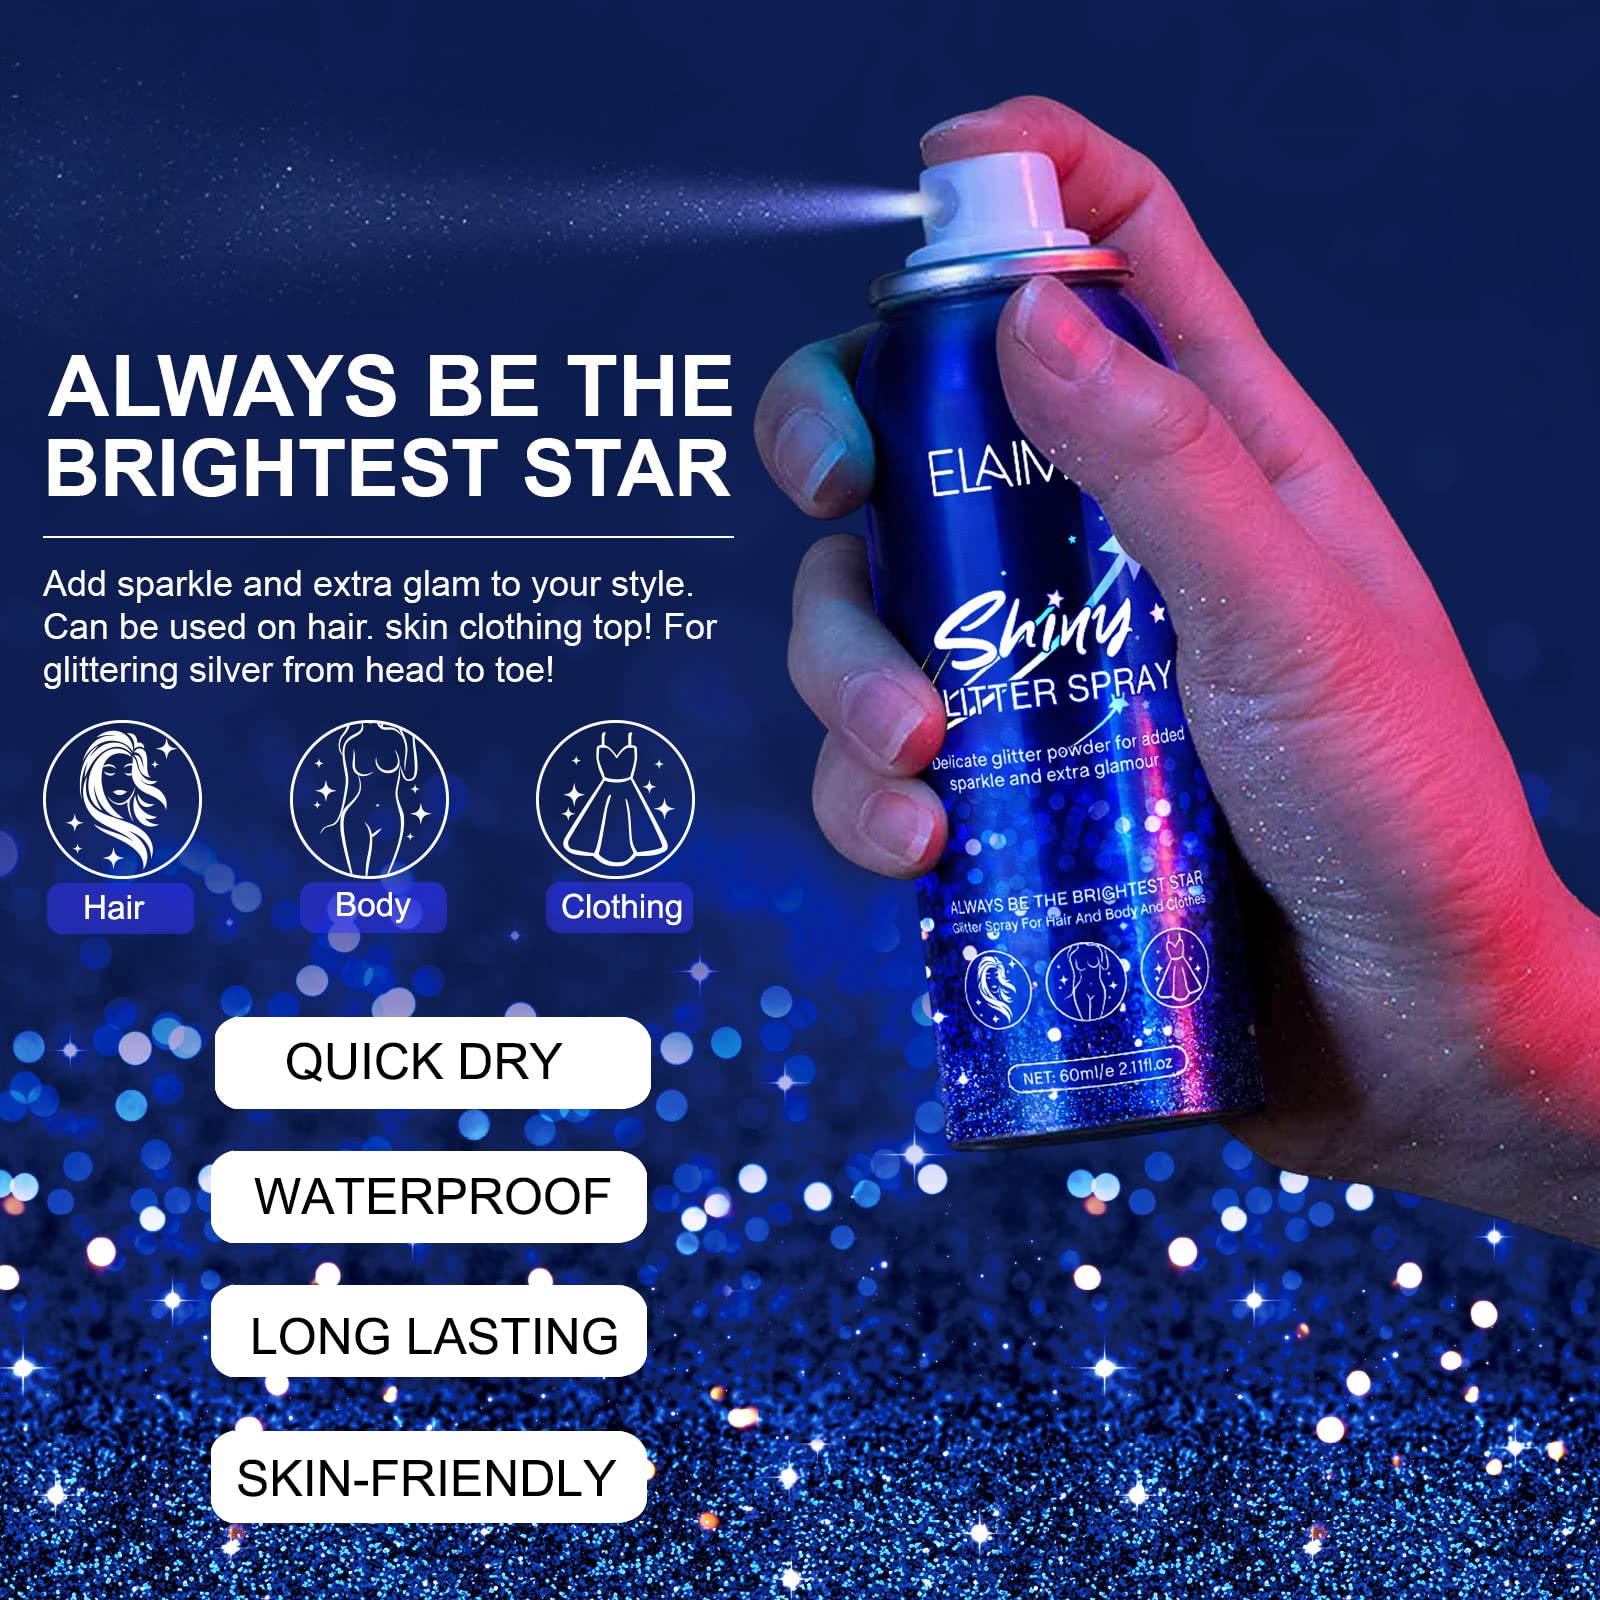 Shiny Glitter Spray, Body Glitter Spray, Hair Glitter Spray, Glitter Spray for Hair and Body (2.11 oz)